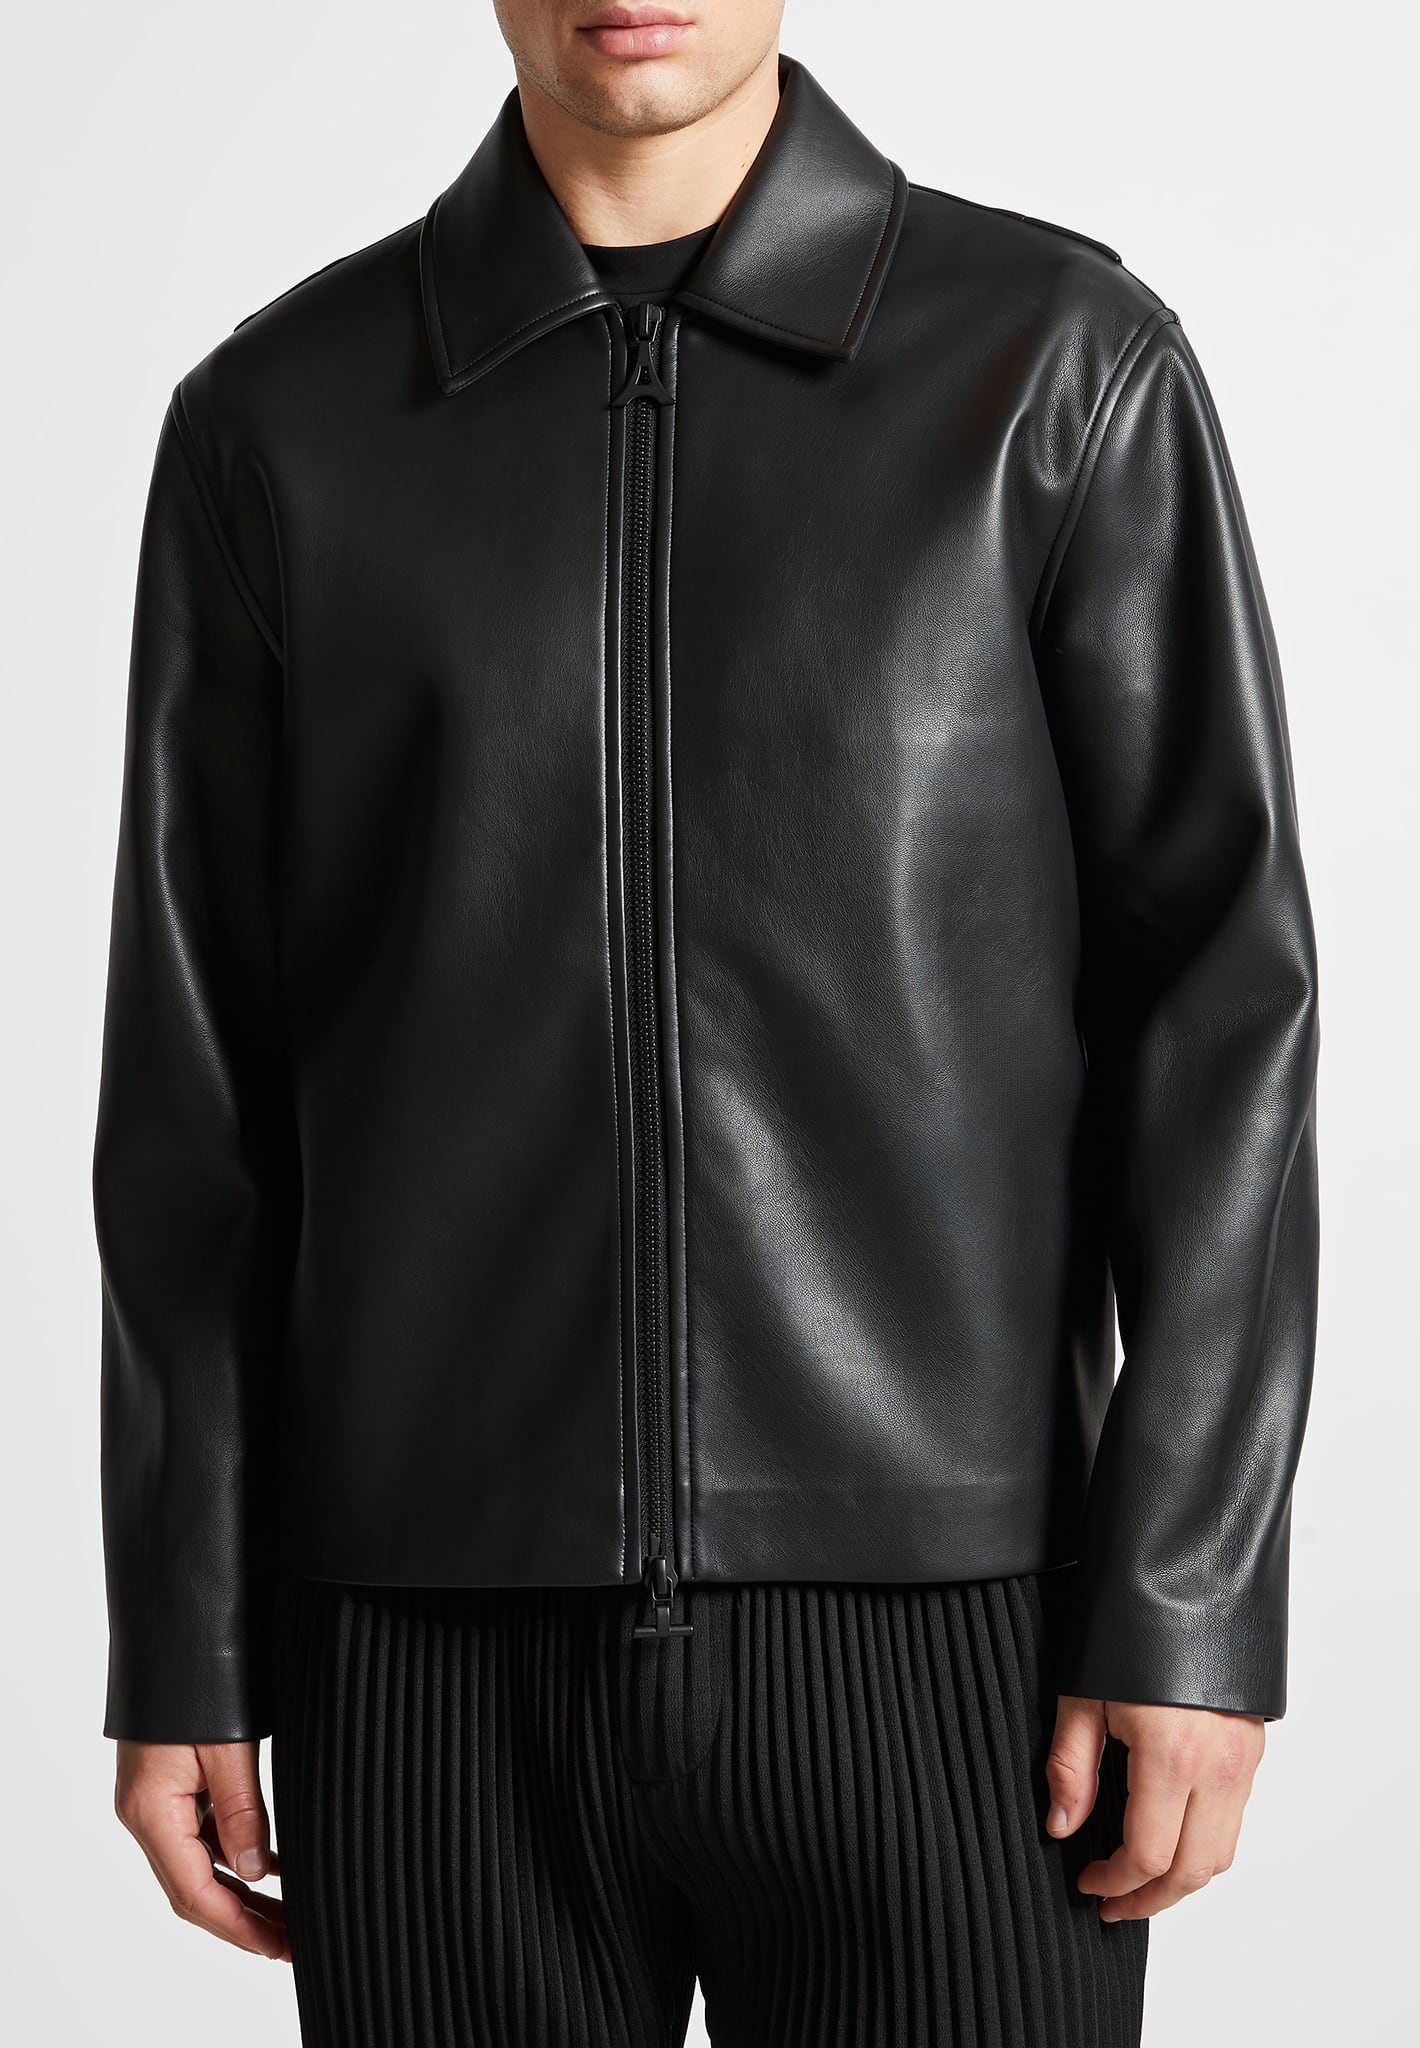 vegan-leather-minimal-boxy-jacket-black